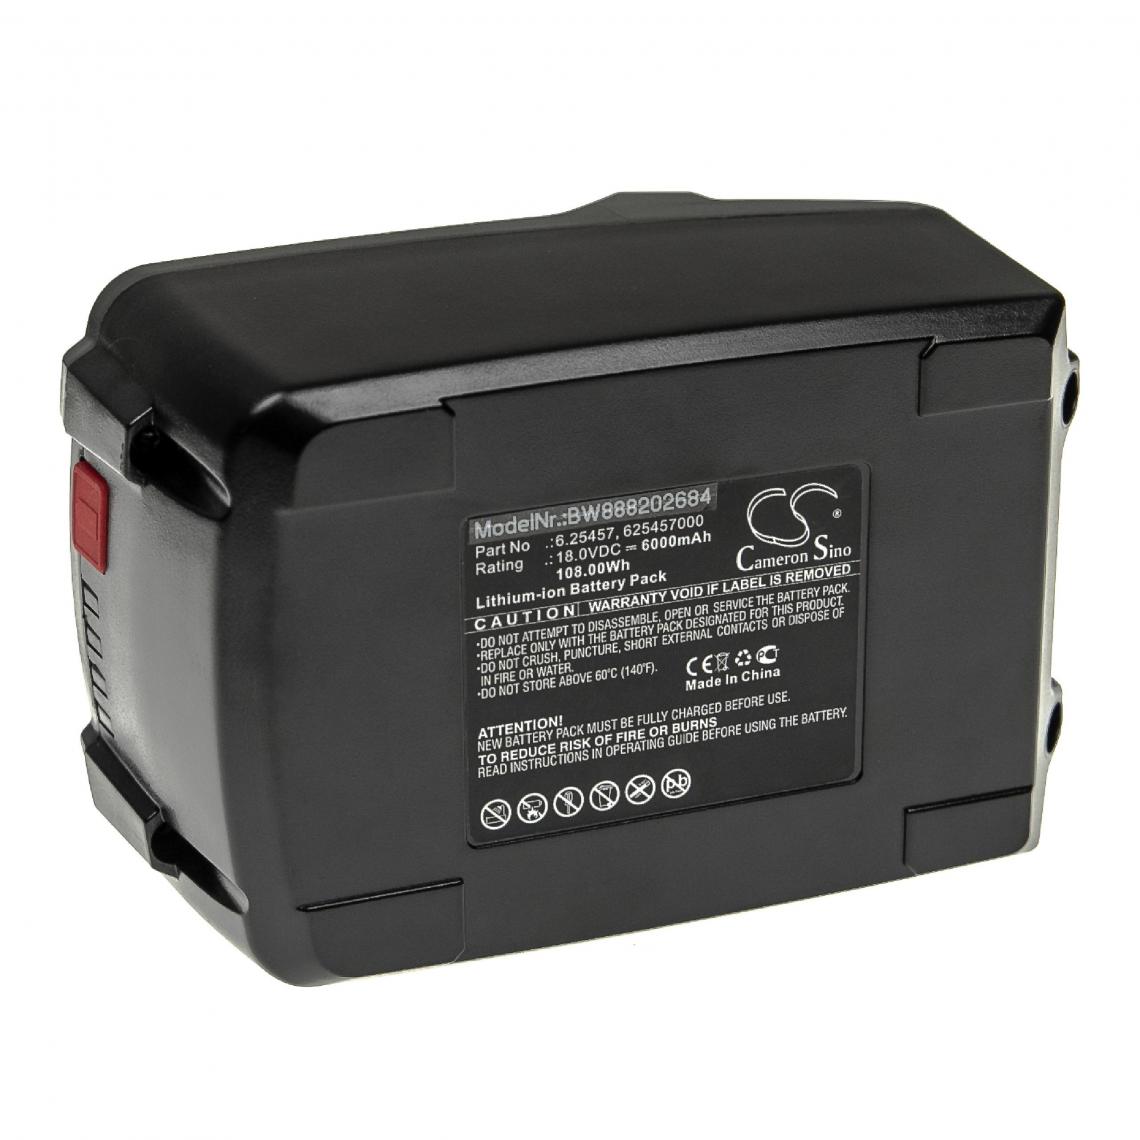 Vhbw - vhbw Batterie compatible avec Fischer FSS 18V 600 - Set 1, FSS 18V 600 - Set 2 outil électrique (6000mAh Li-ion 18 V) - Autre appareil de mesure